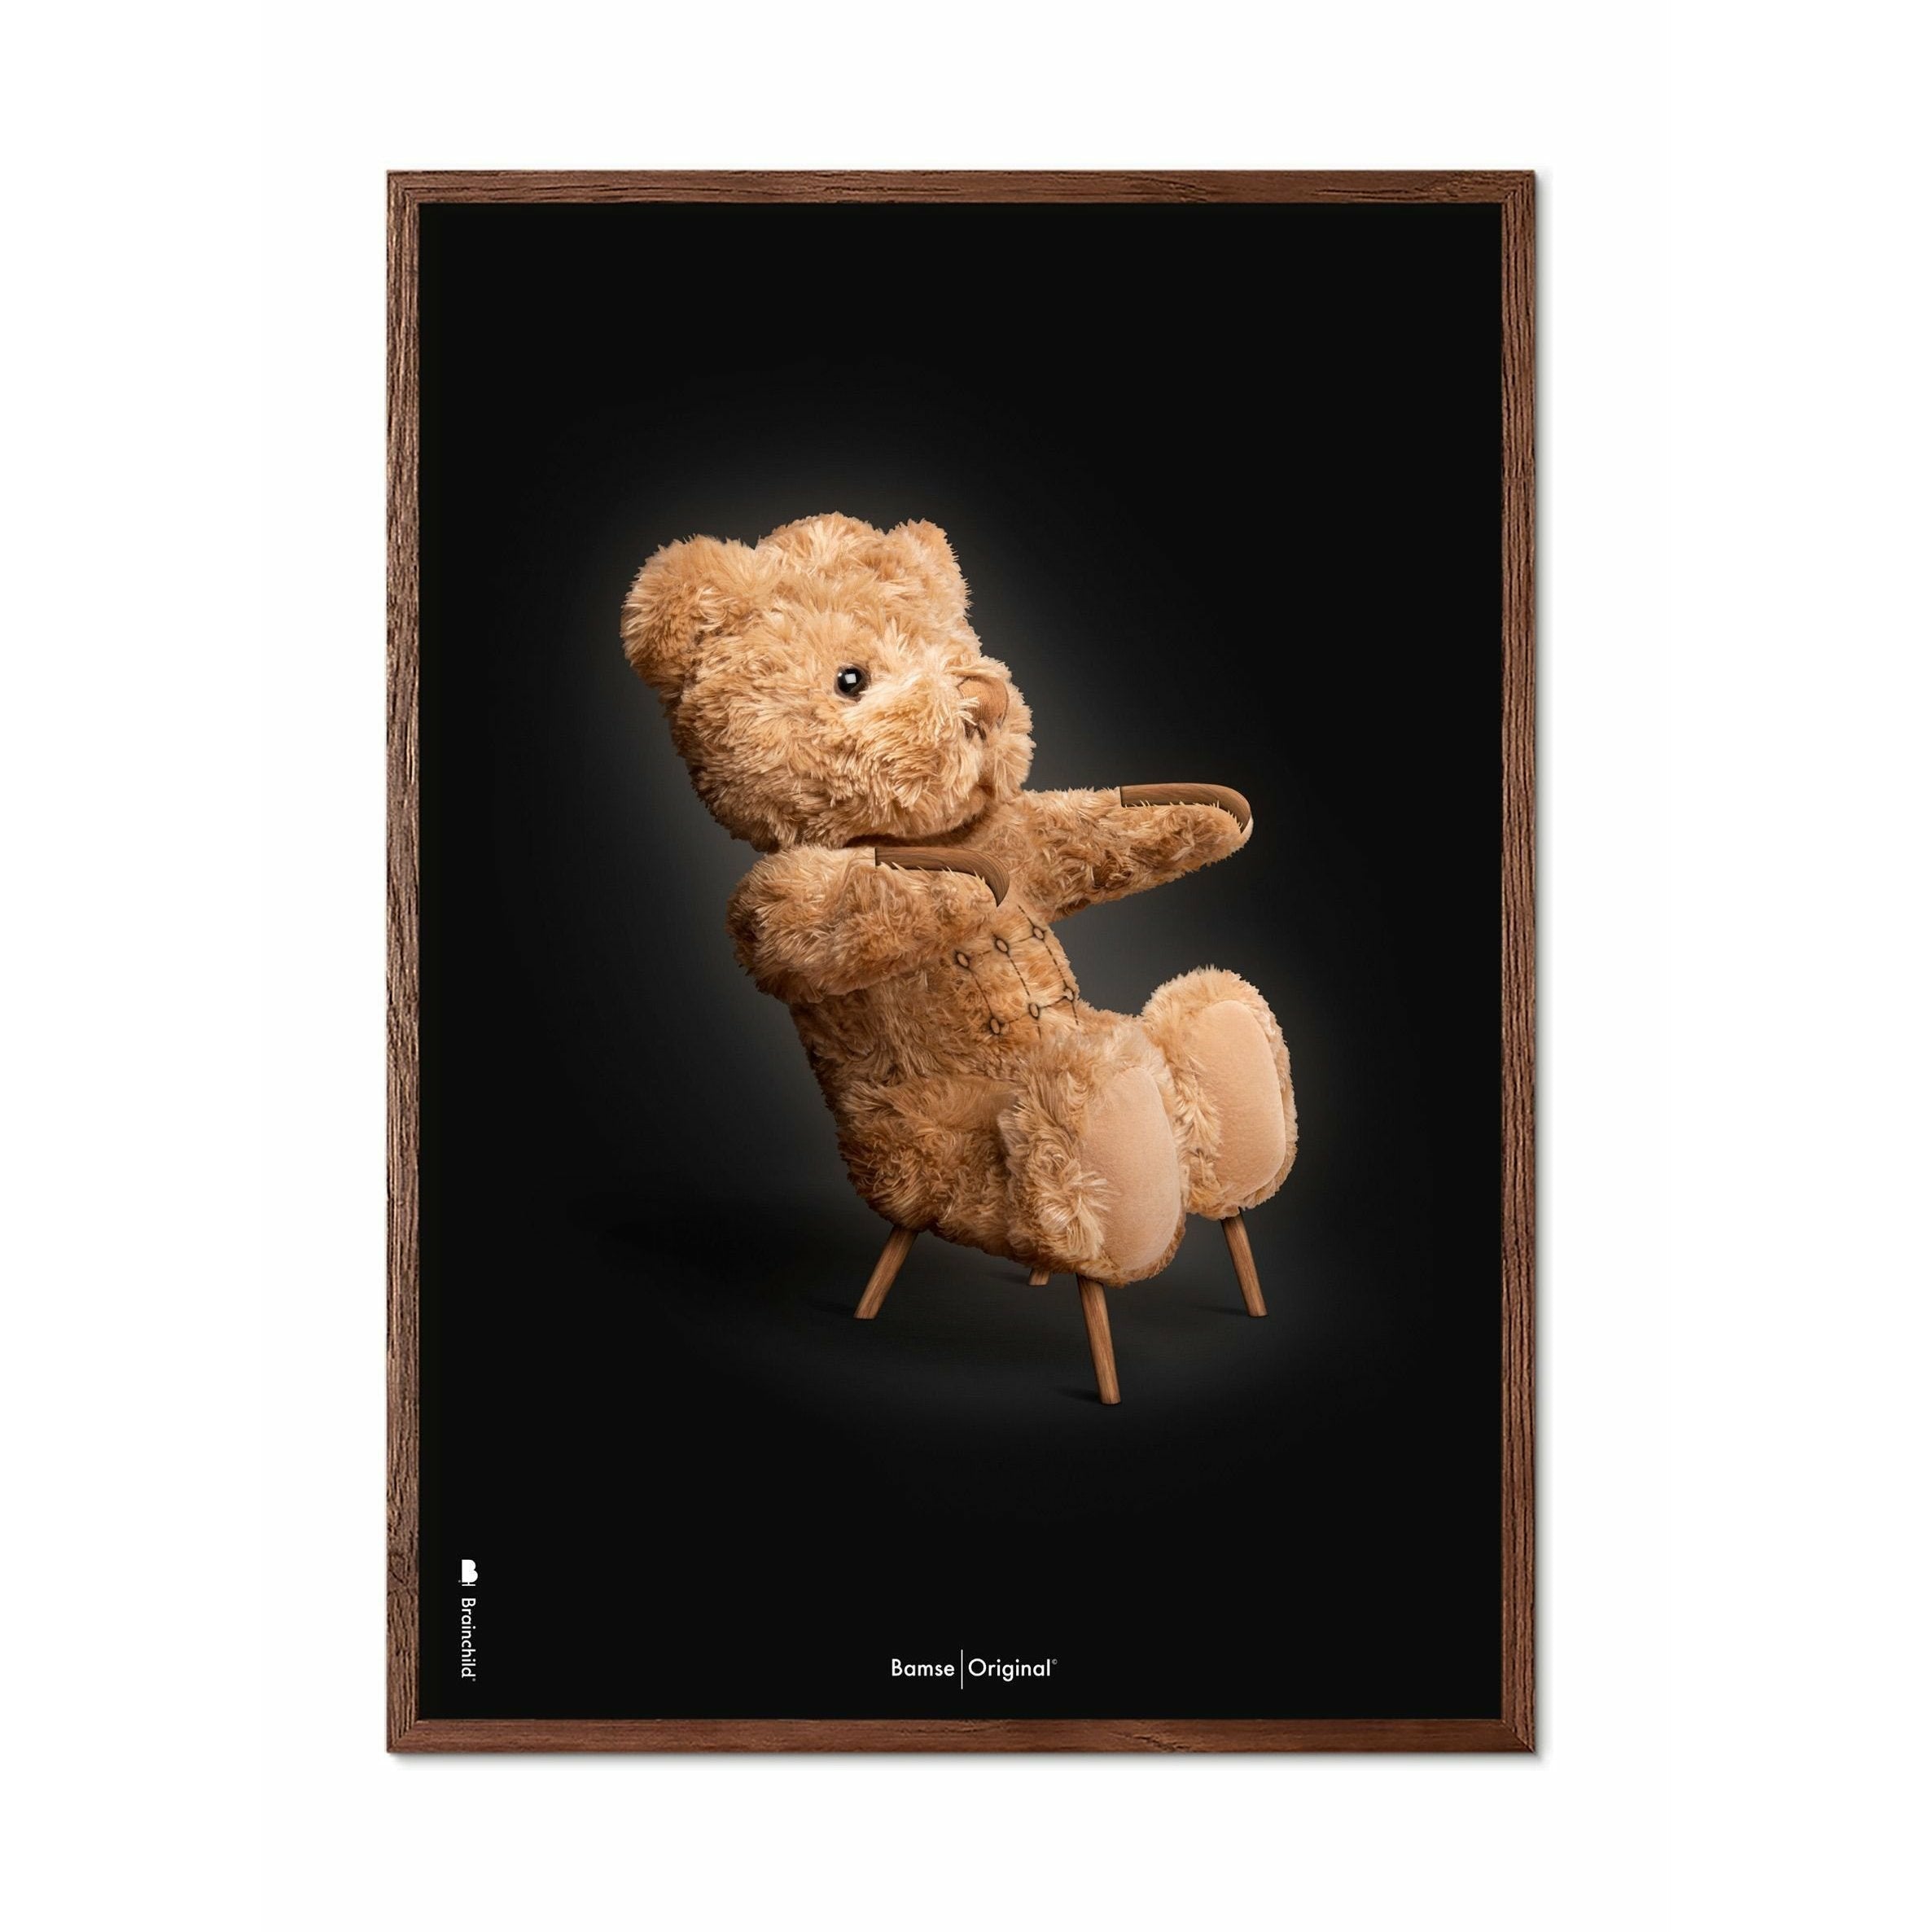 Brainchild Teddybär Classic Poster, Rahmen aus dunklem Holz 30x40 Cm, schwarzer Hintergrund